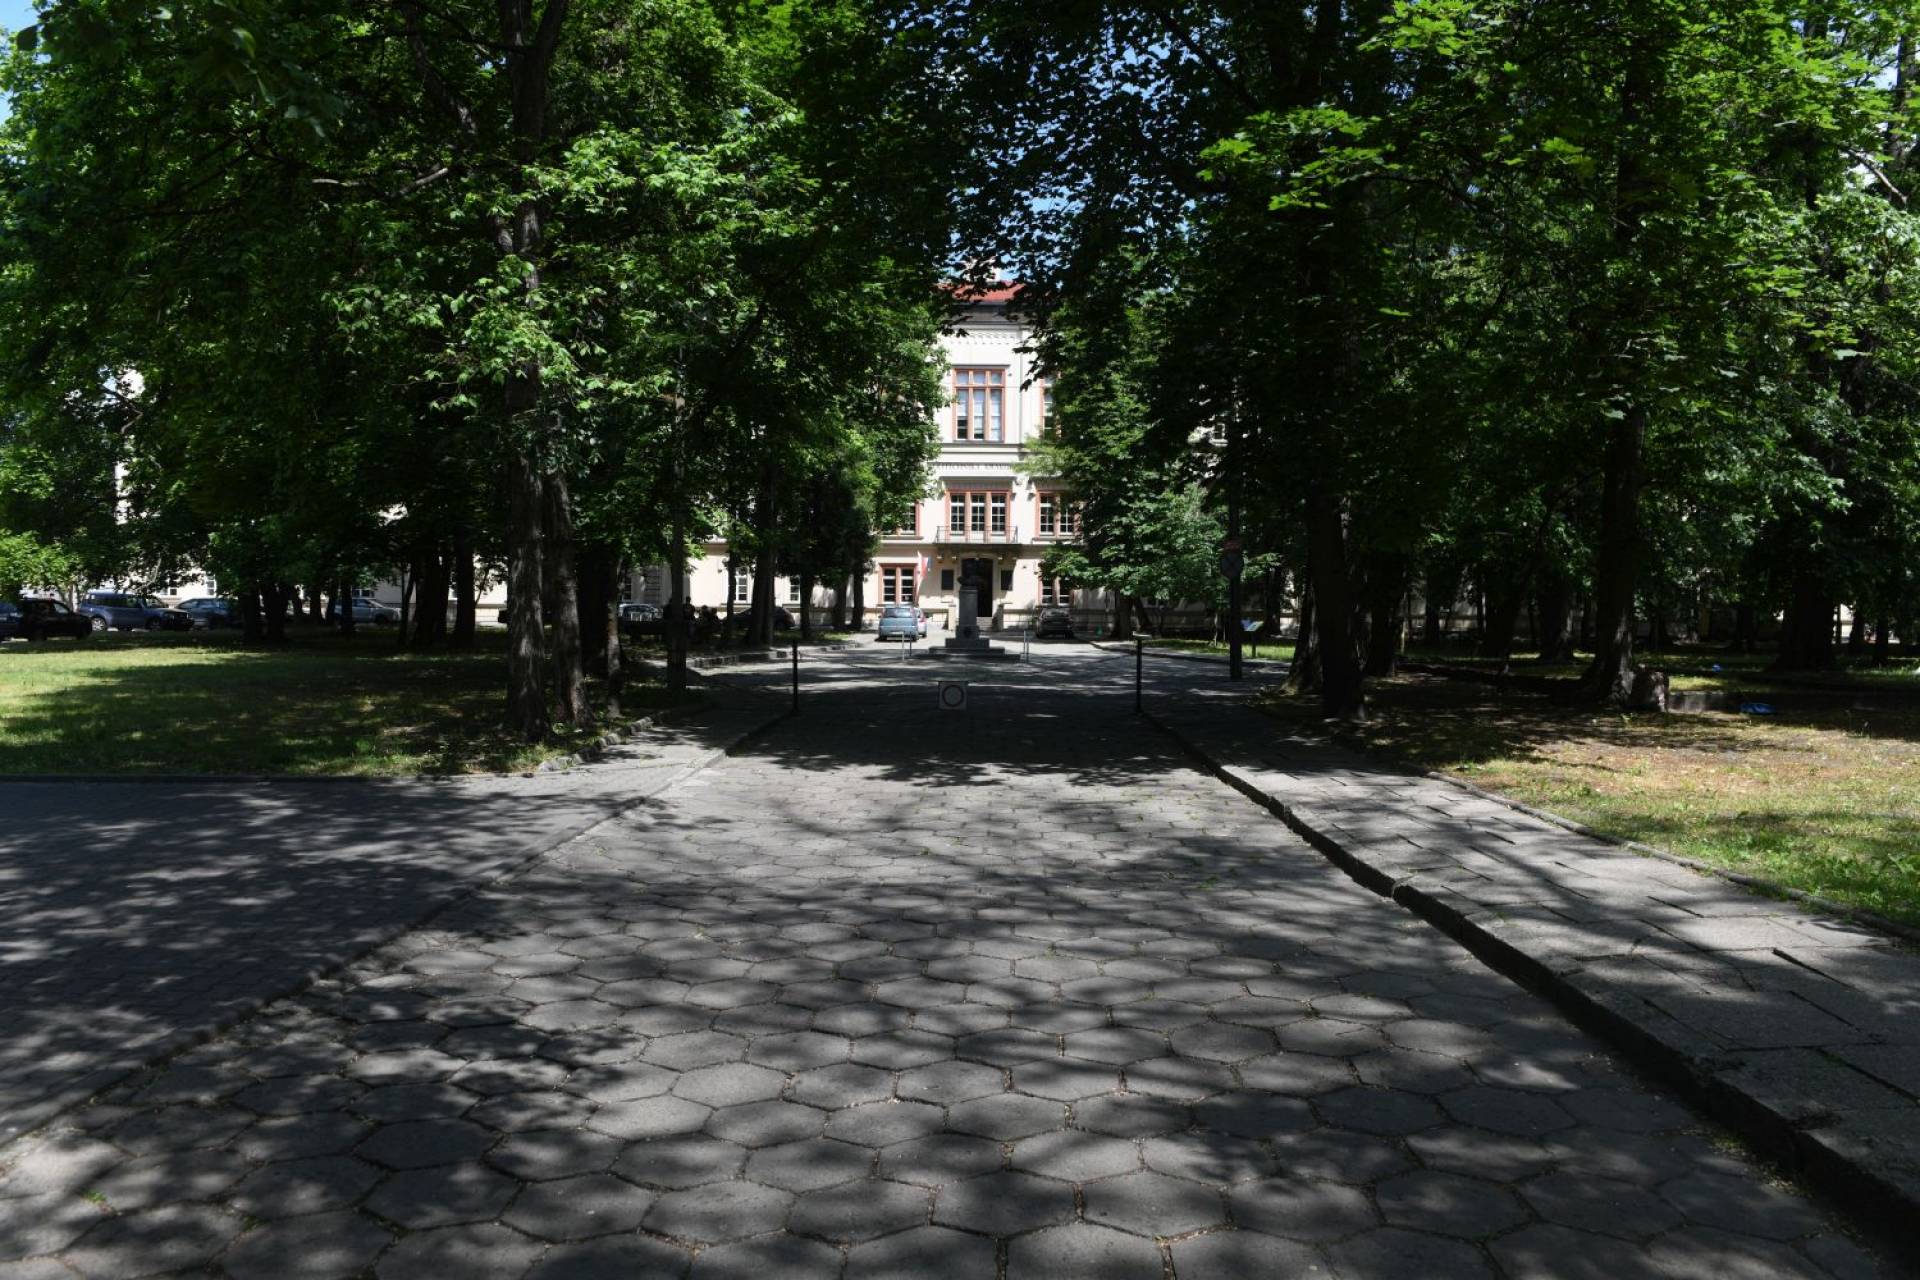 Teren wokół pałacu w Łobzowie ma zostać zagospodarowany. Co tu powstanie?